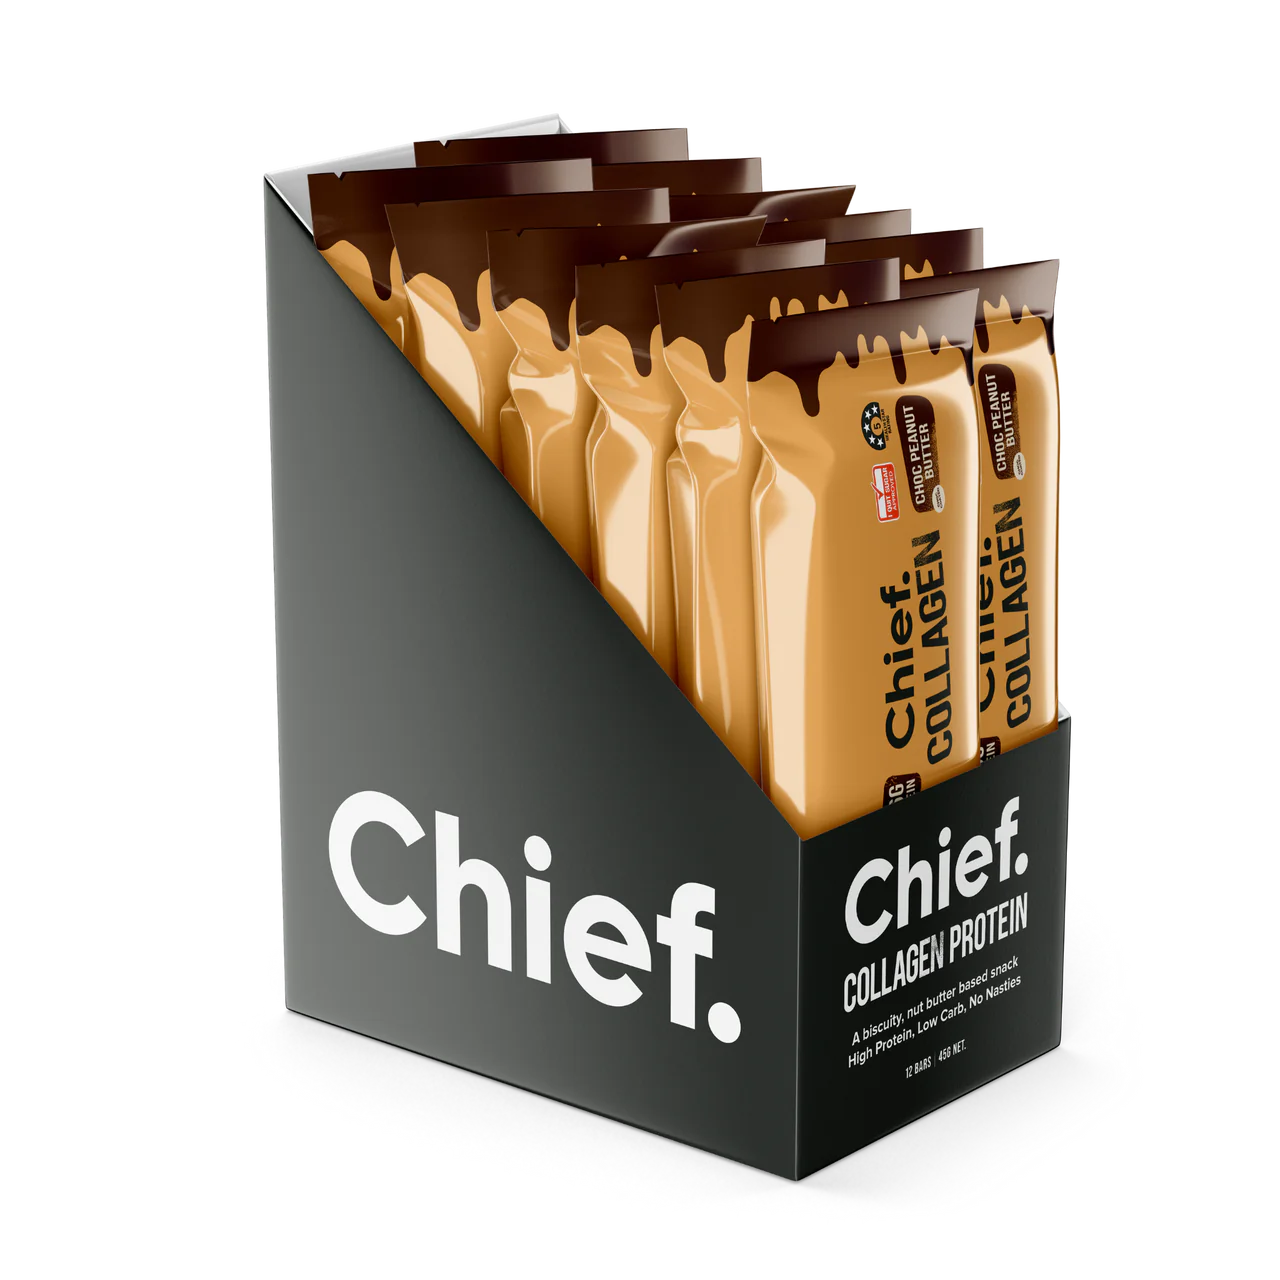 Chief Collagen Protein Choc Peanut Butter Bar